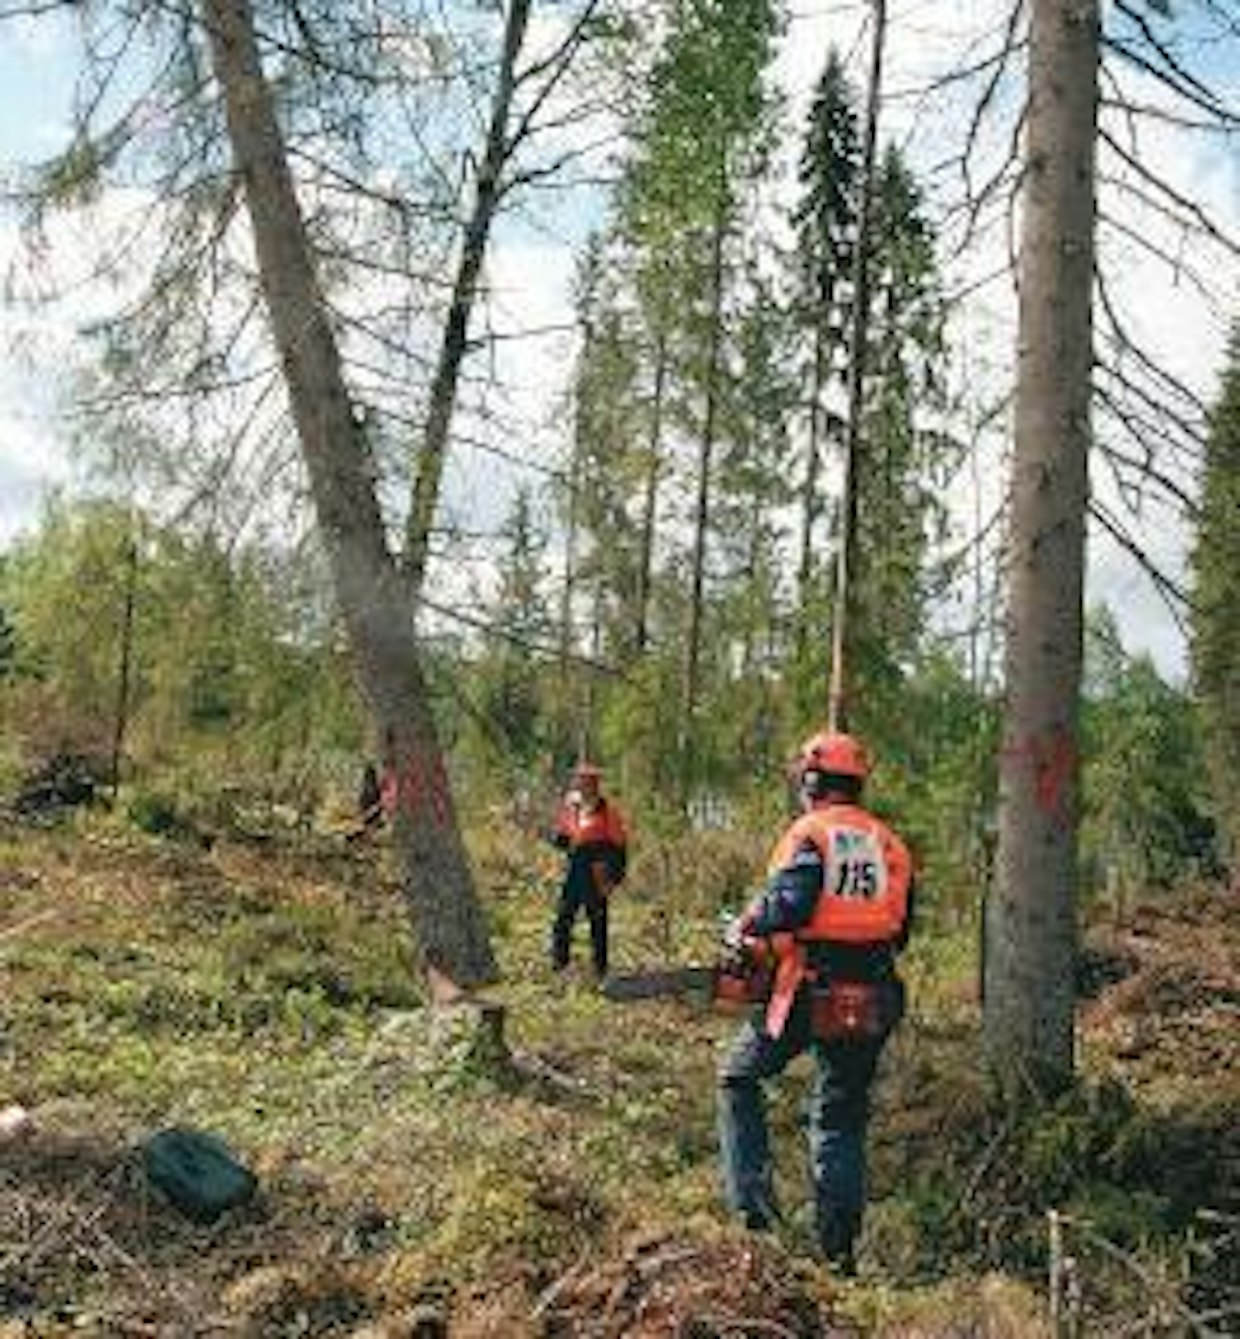 Kuten taustan puista näkyy, Jukka Perämäki pääsi irrottamaan kaatopuunsa onnekkaasti lyhyen tyvenen aikana. Runko iskeytyi maahan 15,4 sentin päähän 15 metrin etäisyydelle pystytetystä kaatokepistä.